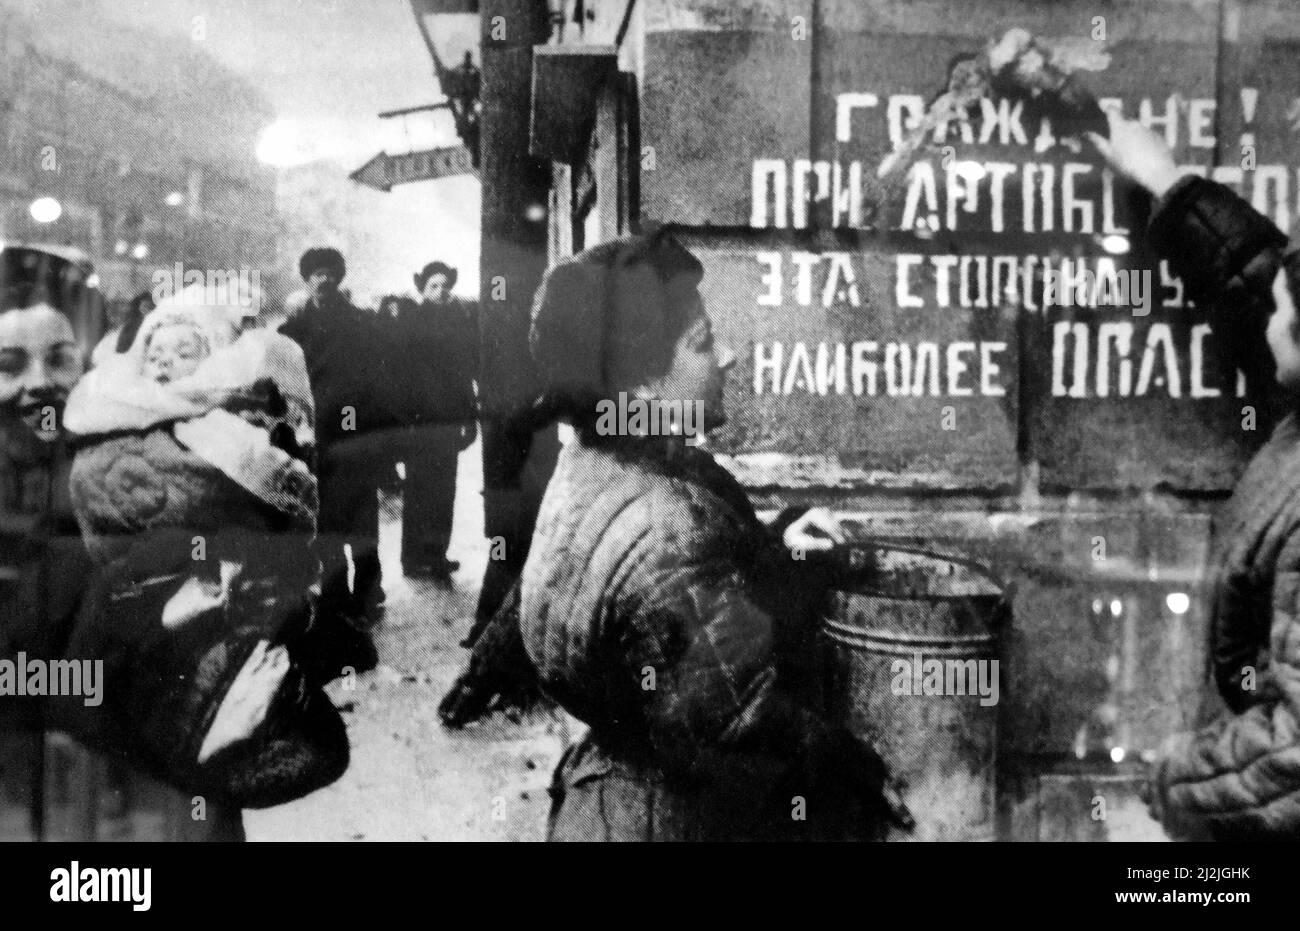 Das jubelende Leningrad. Die Belagerung ist aufgehoben. Auf dem Schild an der Wand steht: Bürger! Dieser Teil der Straße ist während der Artilleriebarterie 1944 am gefährlichsten Stockfoto